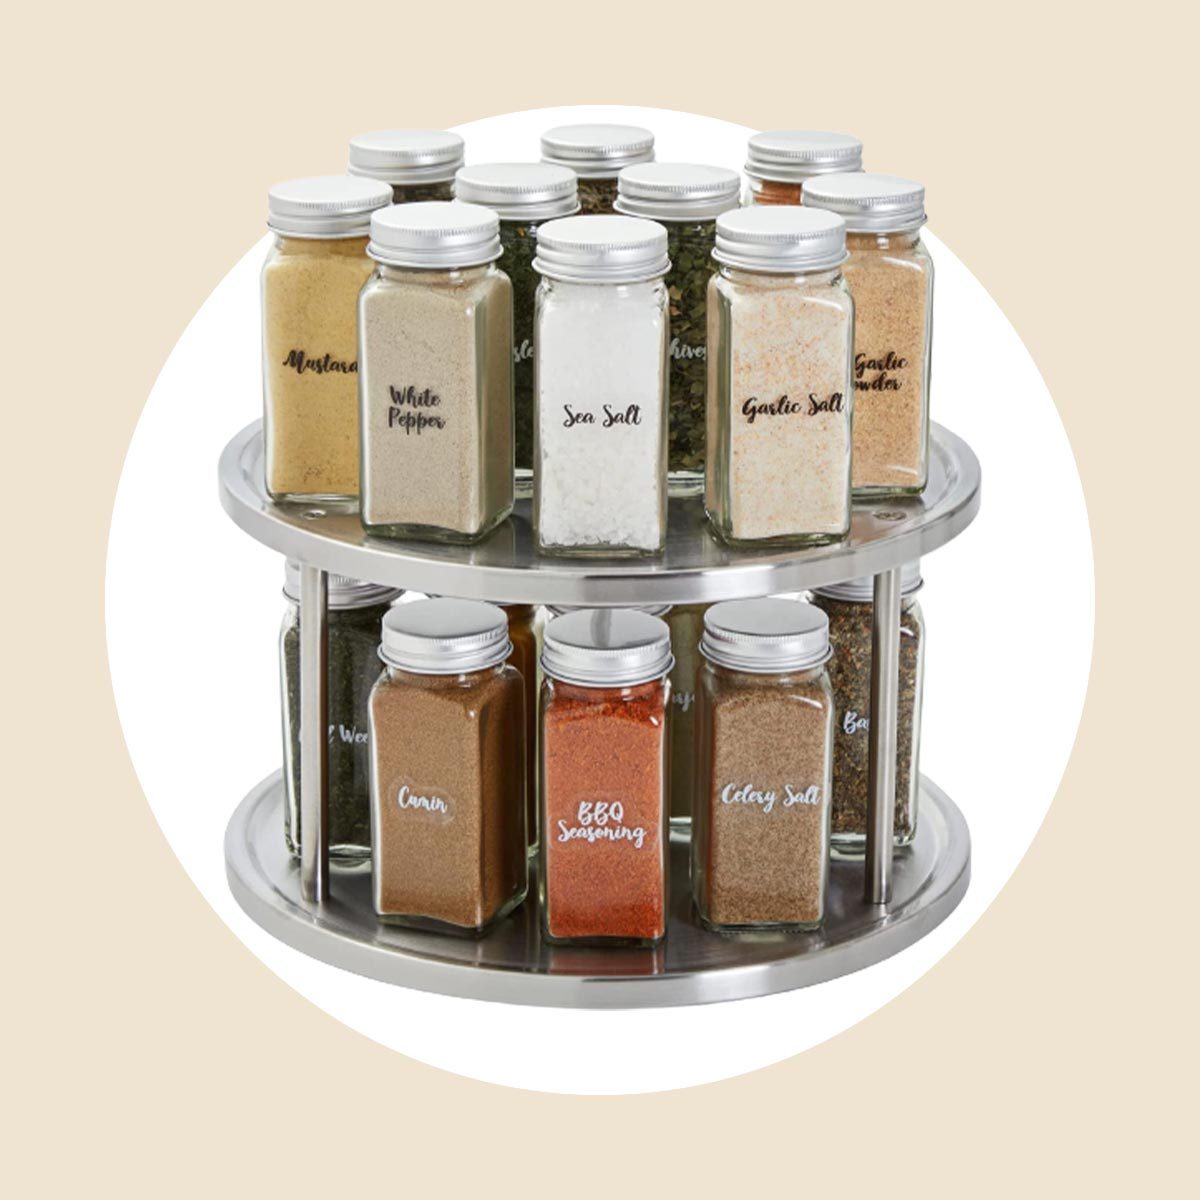 Best Spice Storage Solution: Mason Jars